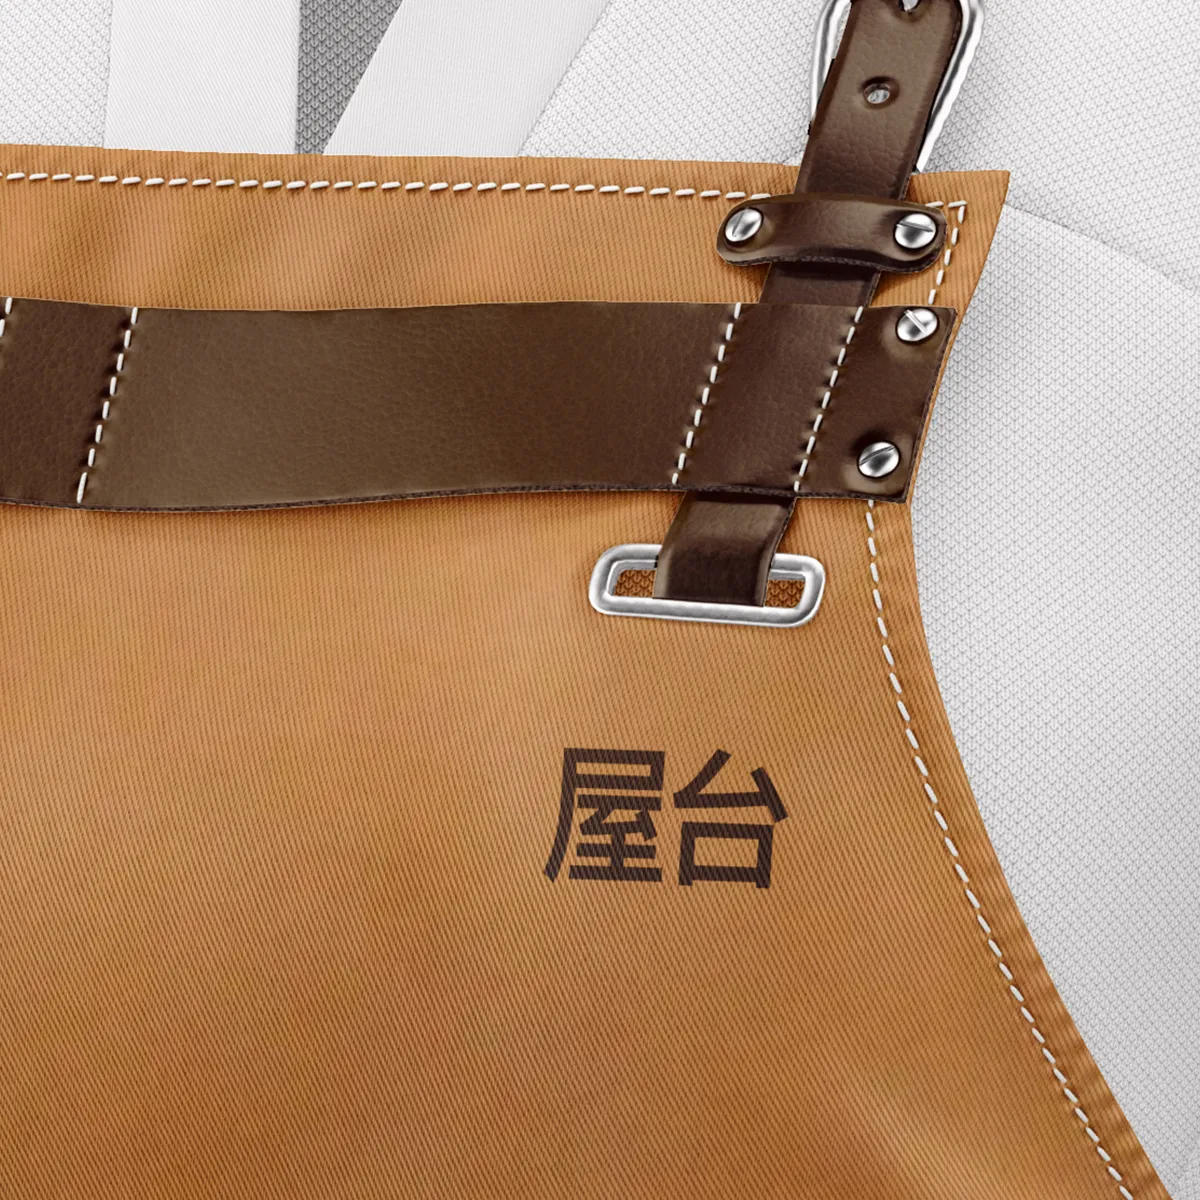 F&B brown apron, Japanese apron restaurant design nonfacture